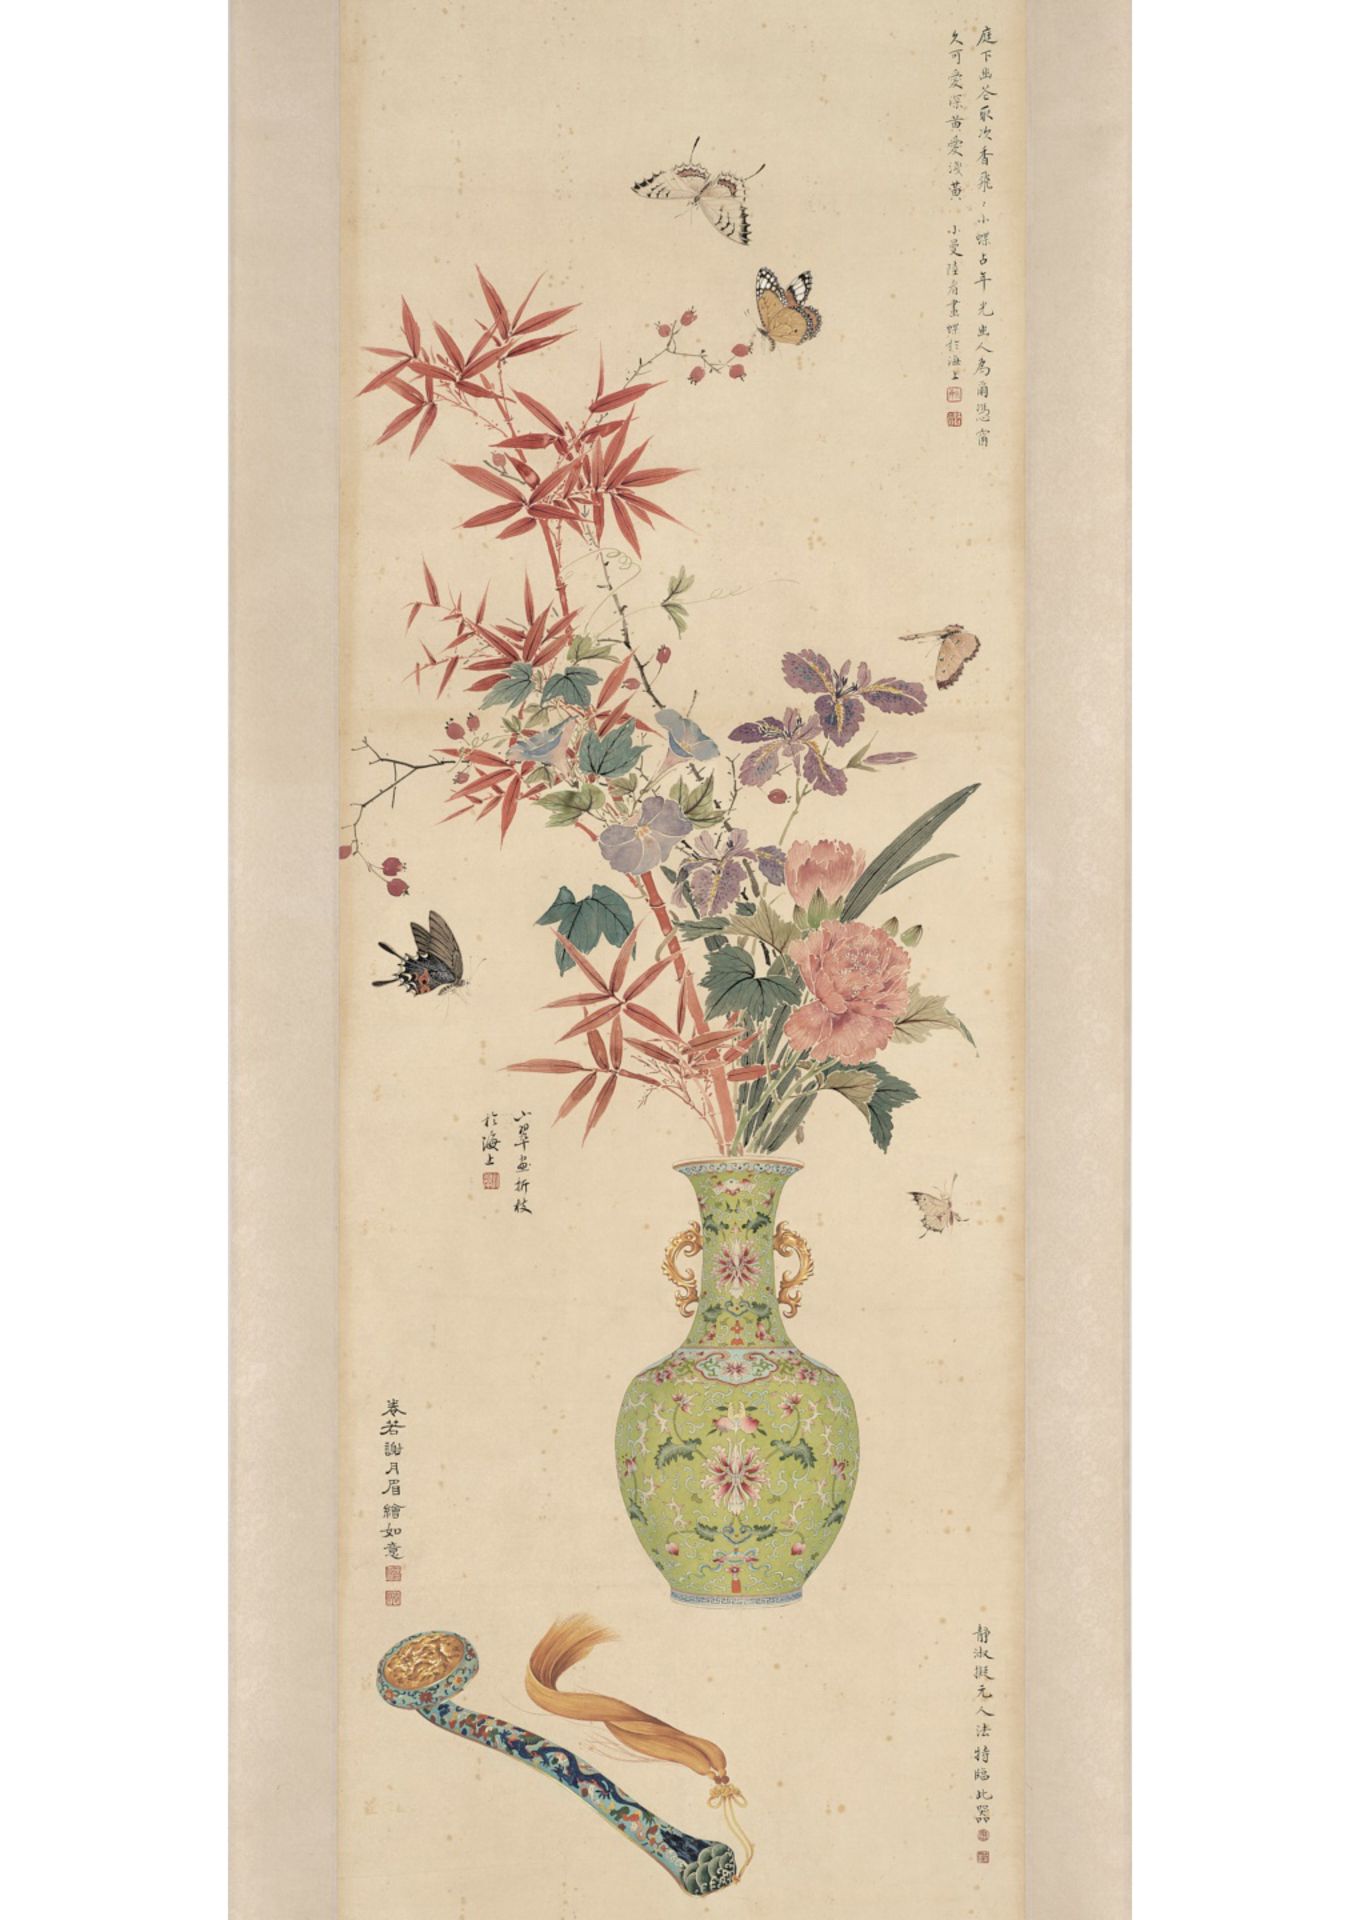 BUTTERFLIES, FLOWERS, SCEPTER, AND VASE', BY LU XIAOMAN, CHEN XIAOCUI, XIE YUEMEI, AND PAN JINGSHU